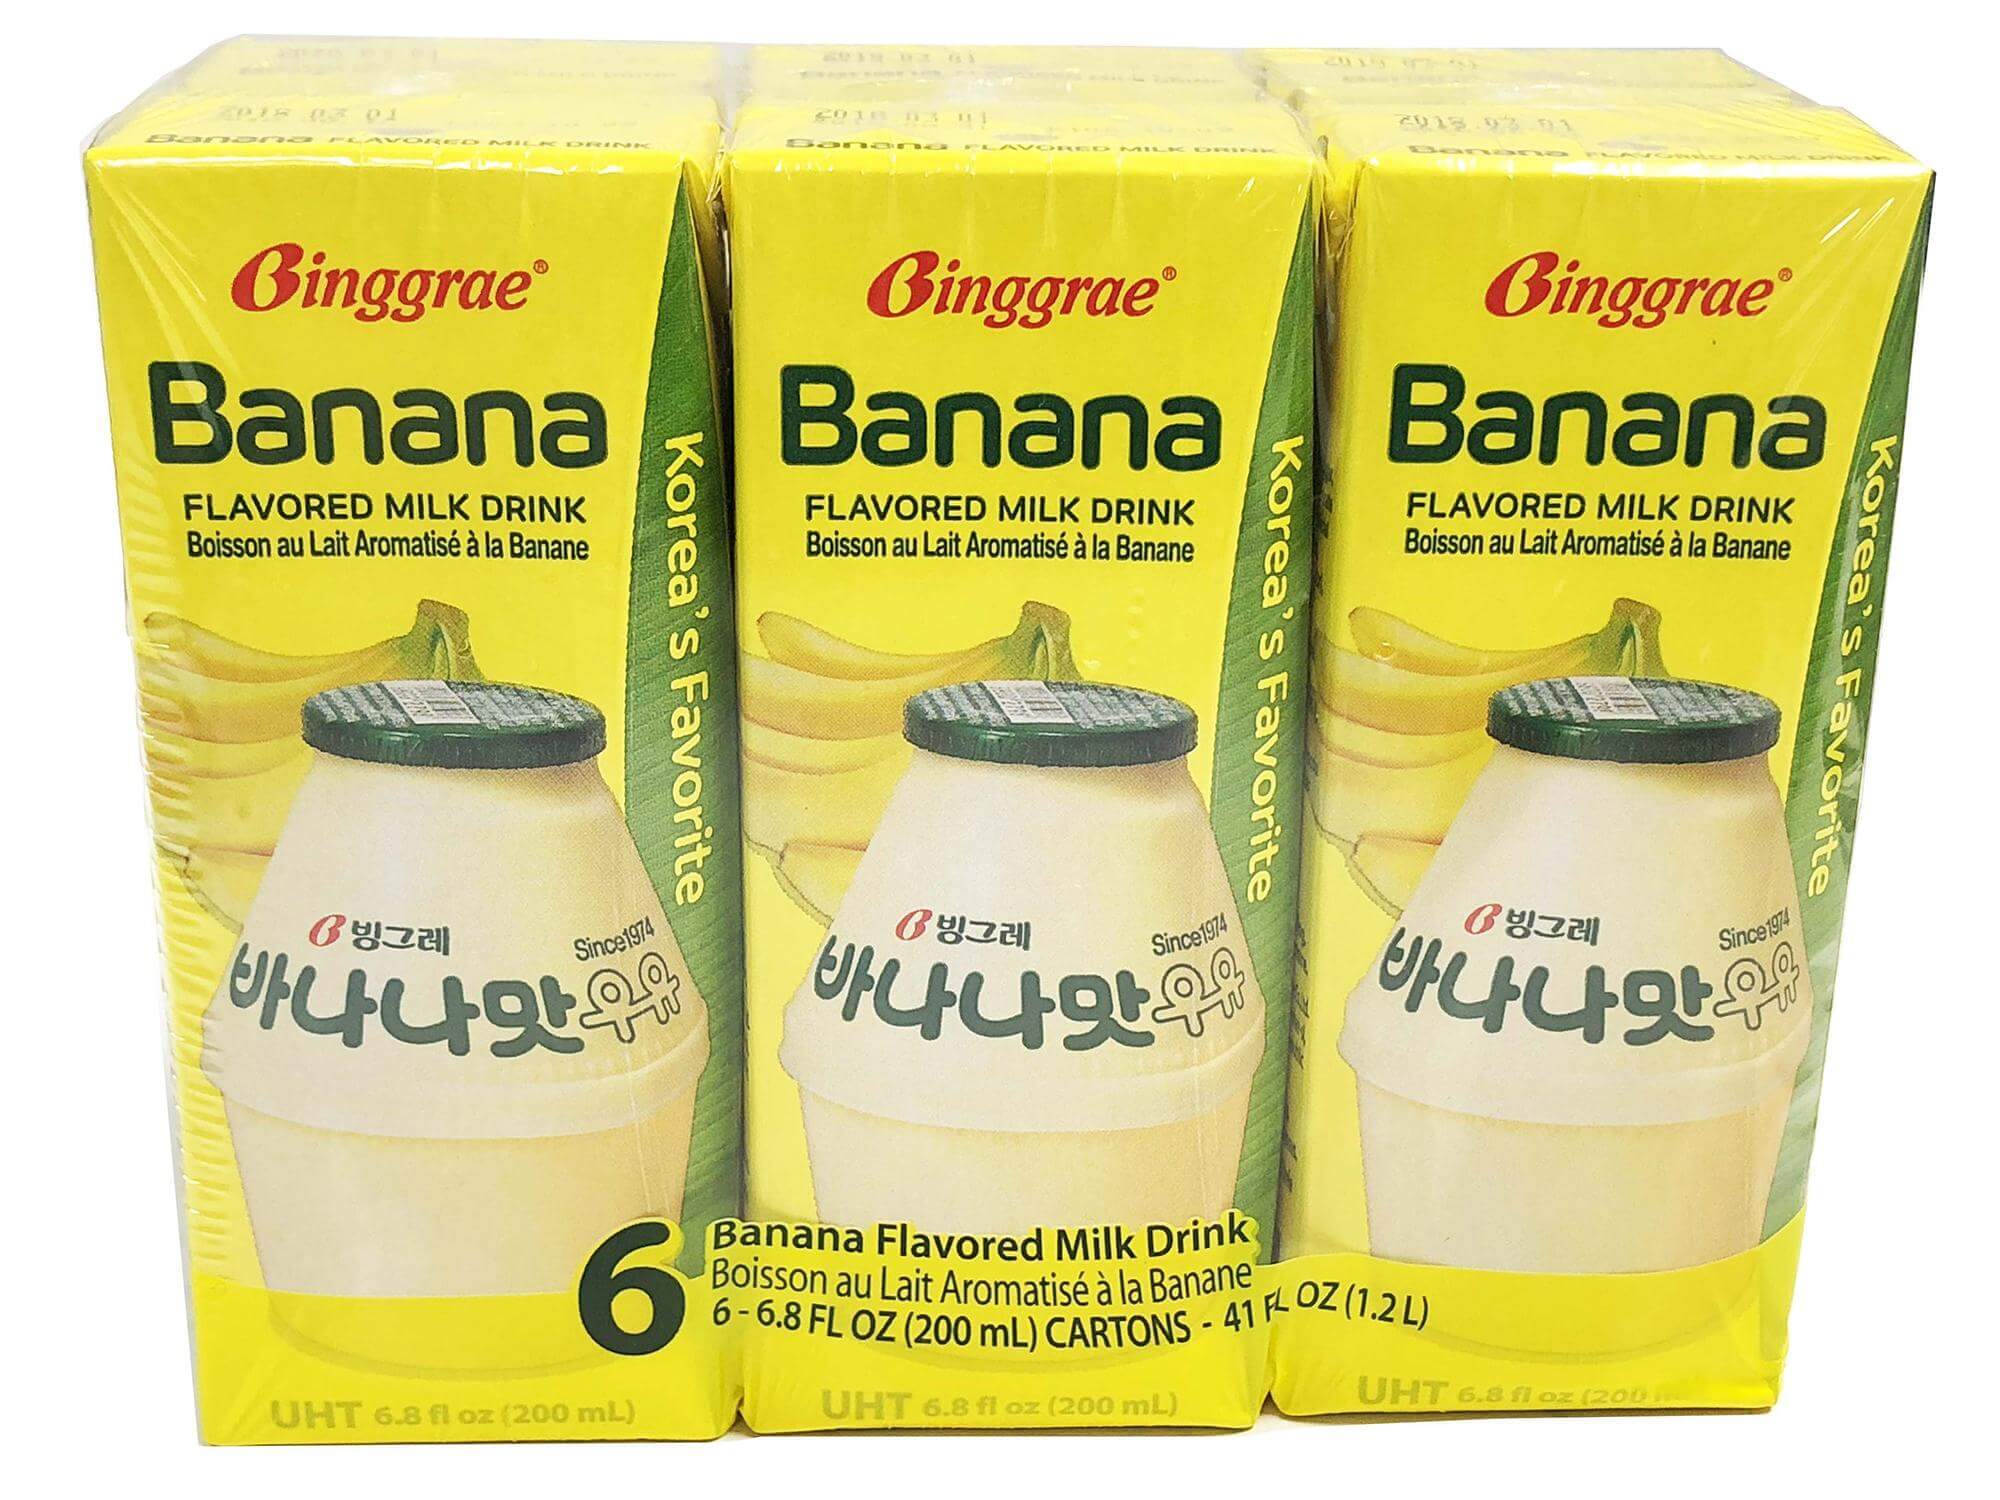 Binggrae Banana Flavored Milk - Grace Market